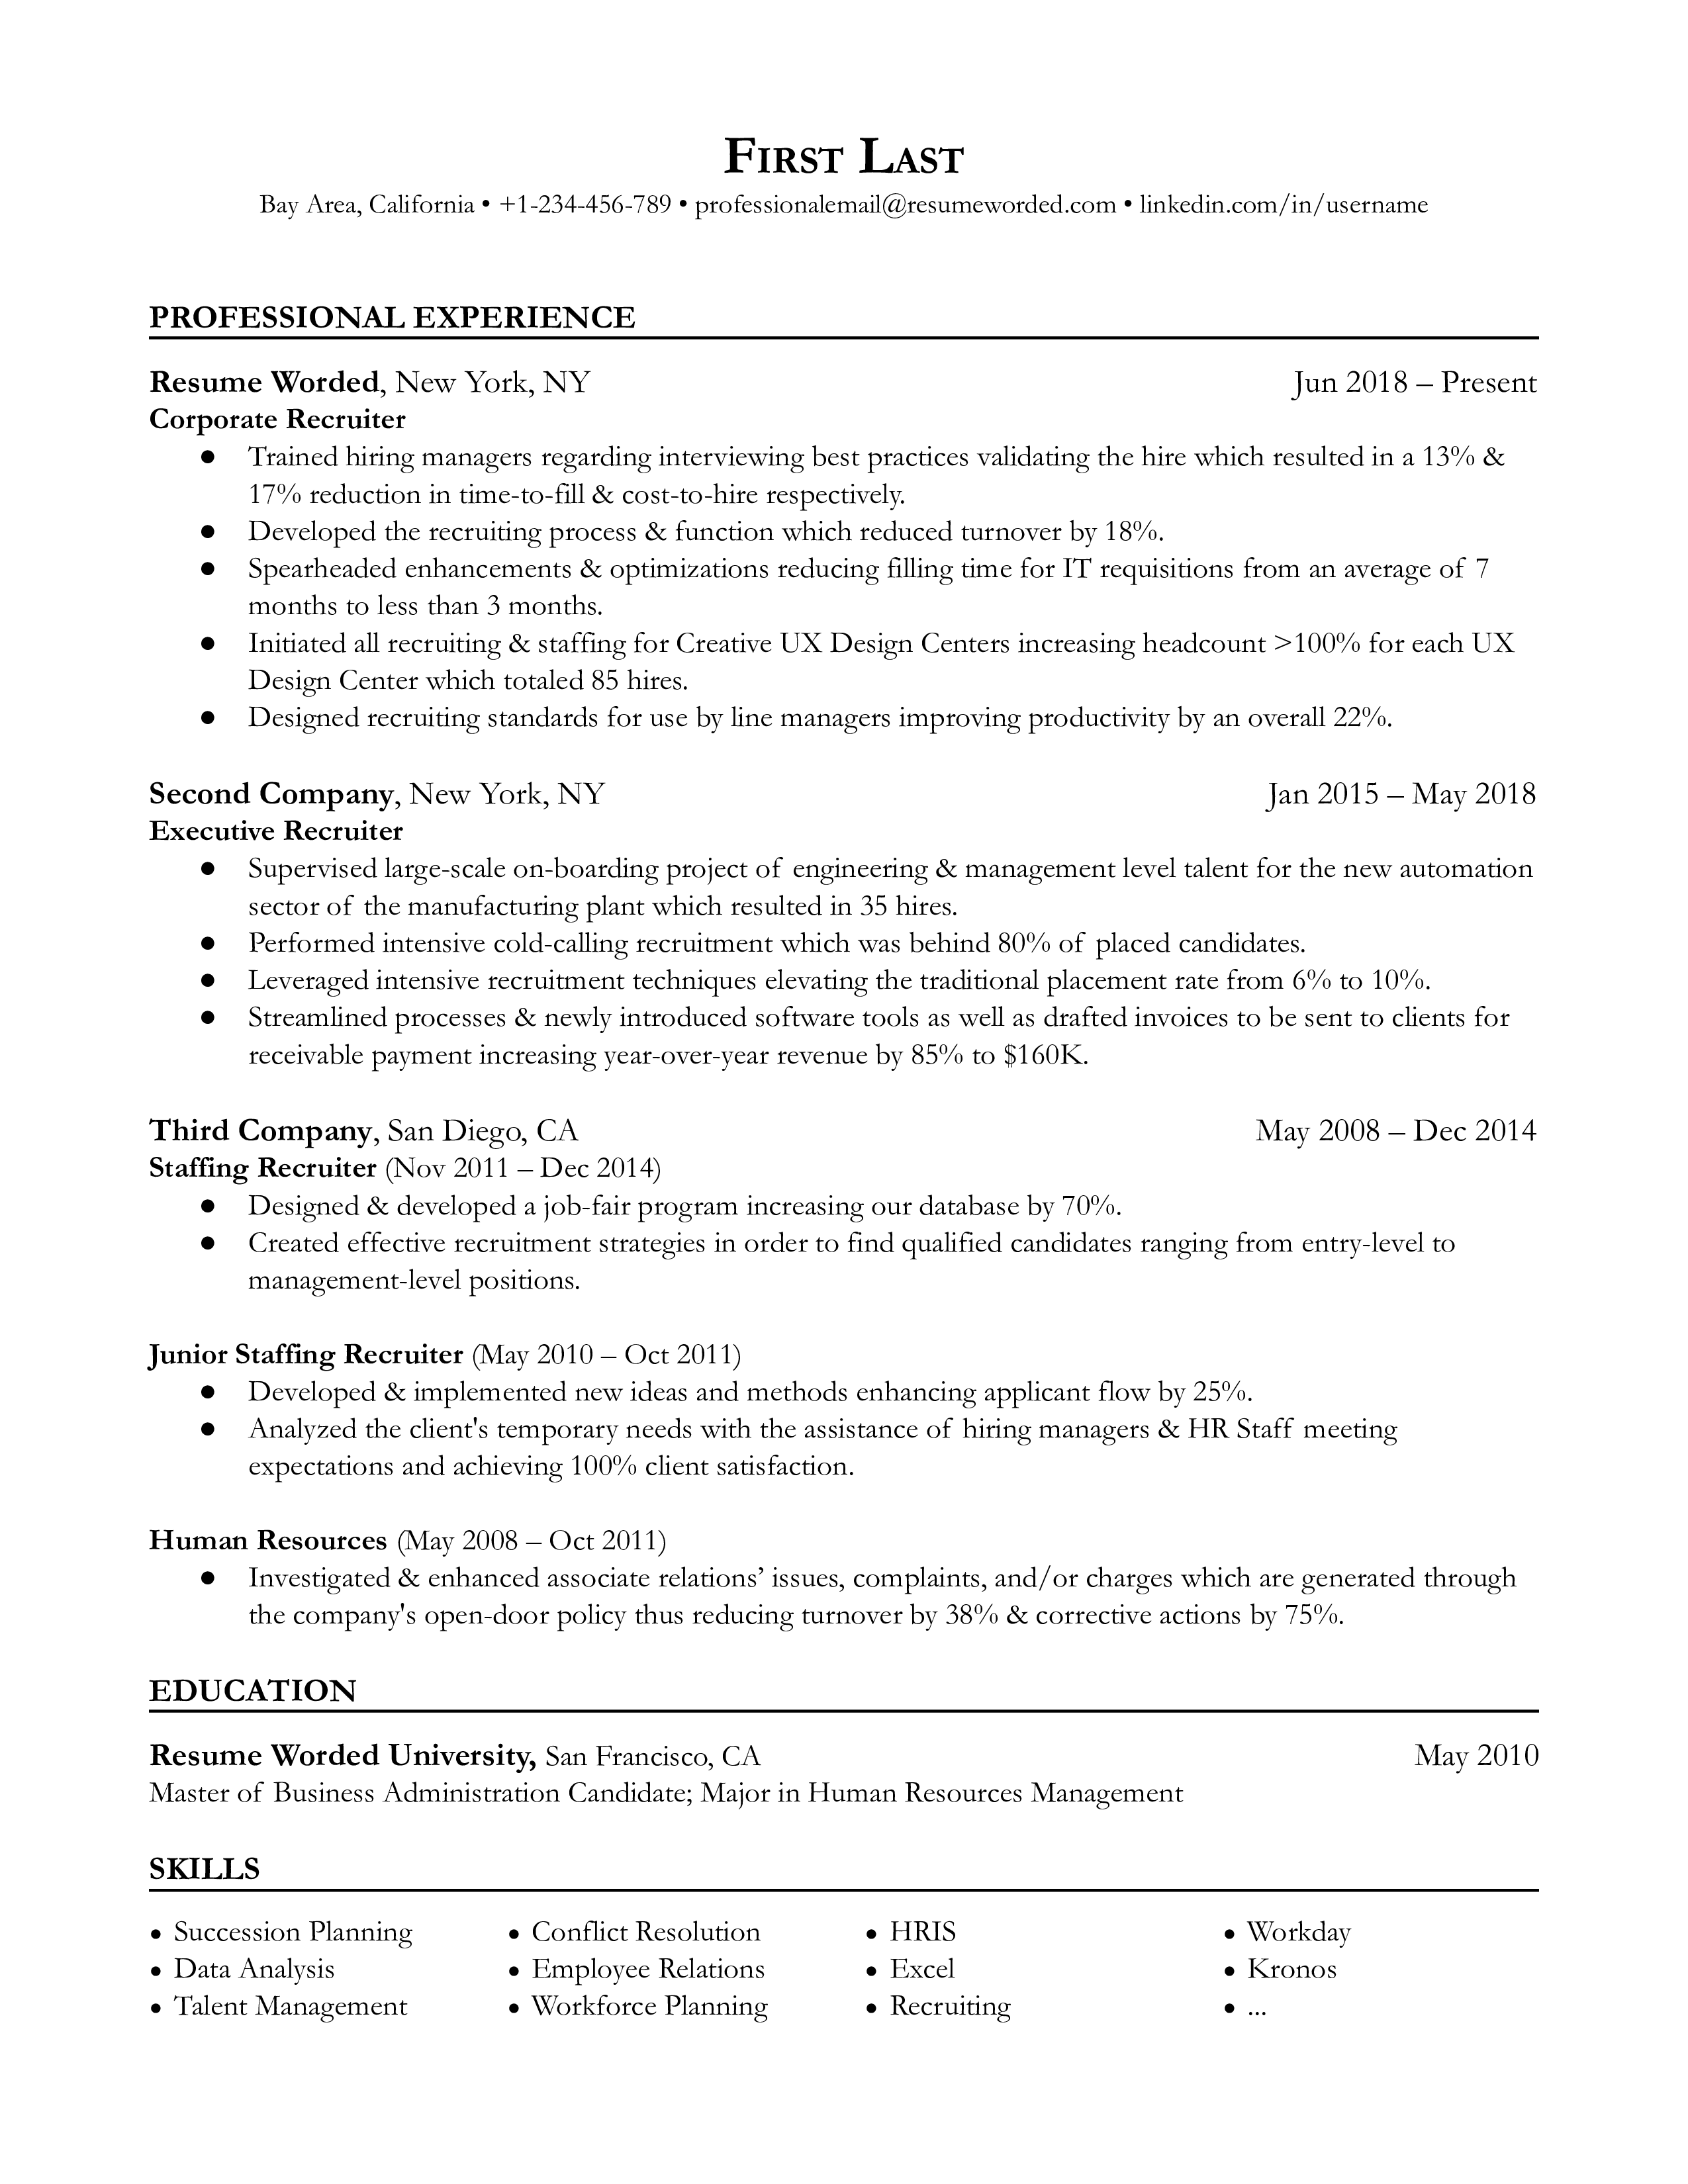 Corporate Recruiter Resume Sample